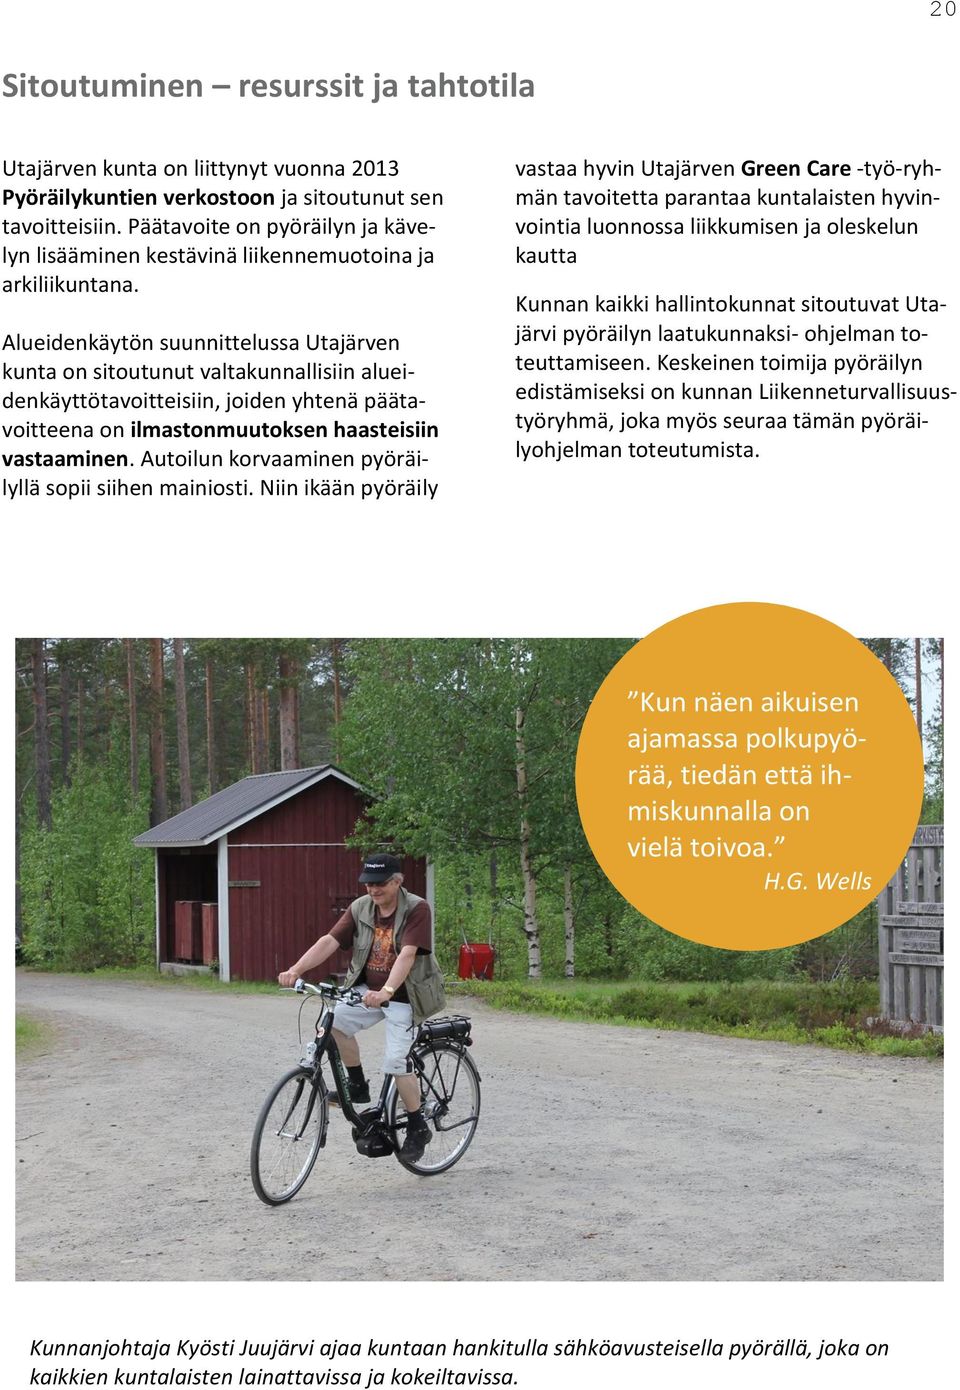 Alueidenkäytön suunnittelussa Utajärven kunta on sitoutunut valtakunnallisiin alueidenkäyttötavoitteisiin, joiden yhtenä päätavoitteena on ilmastonmuutoksen haasteisiin vastaaminen.